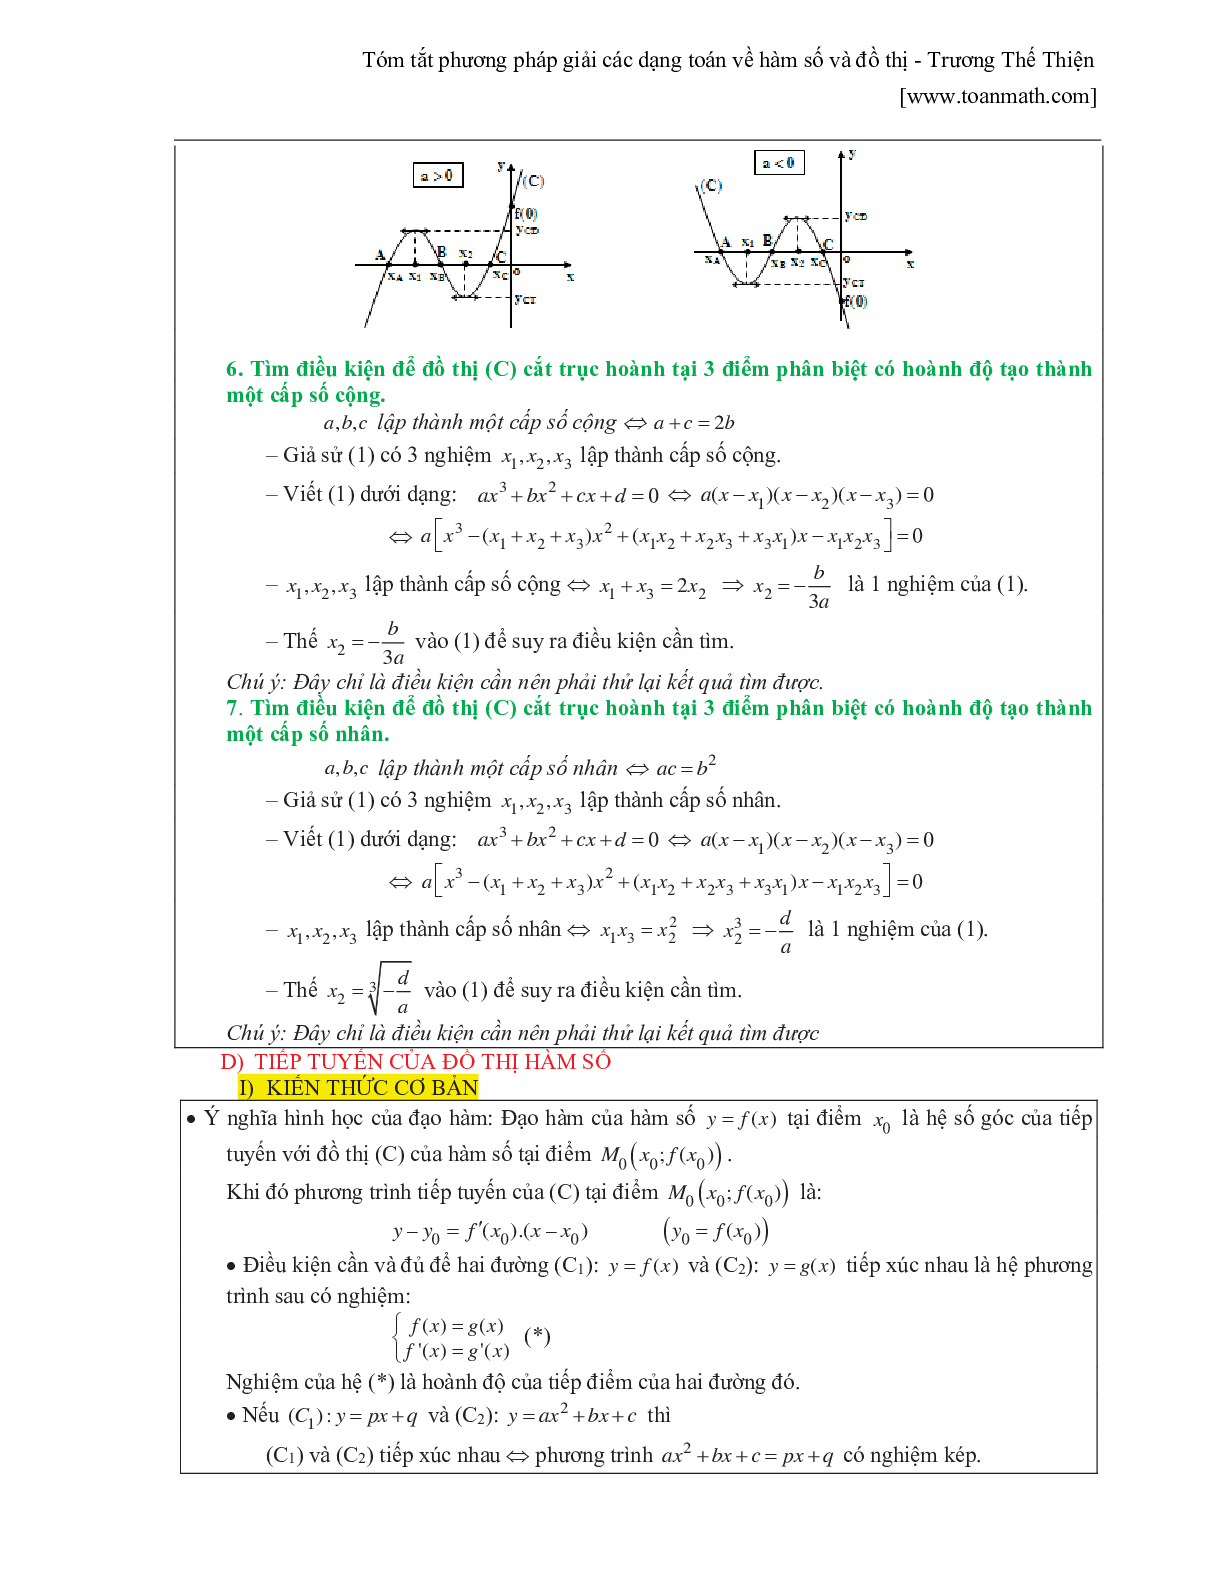 Tóm tắt phương pháp giải các dạng toán về hàm số và đồ thị (trang 7)